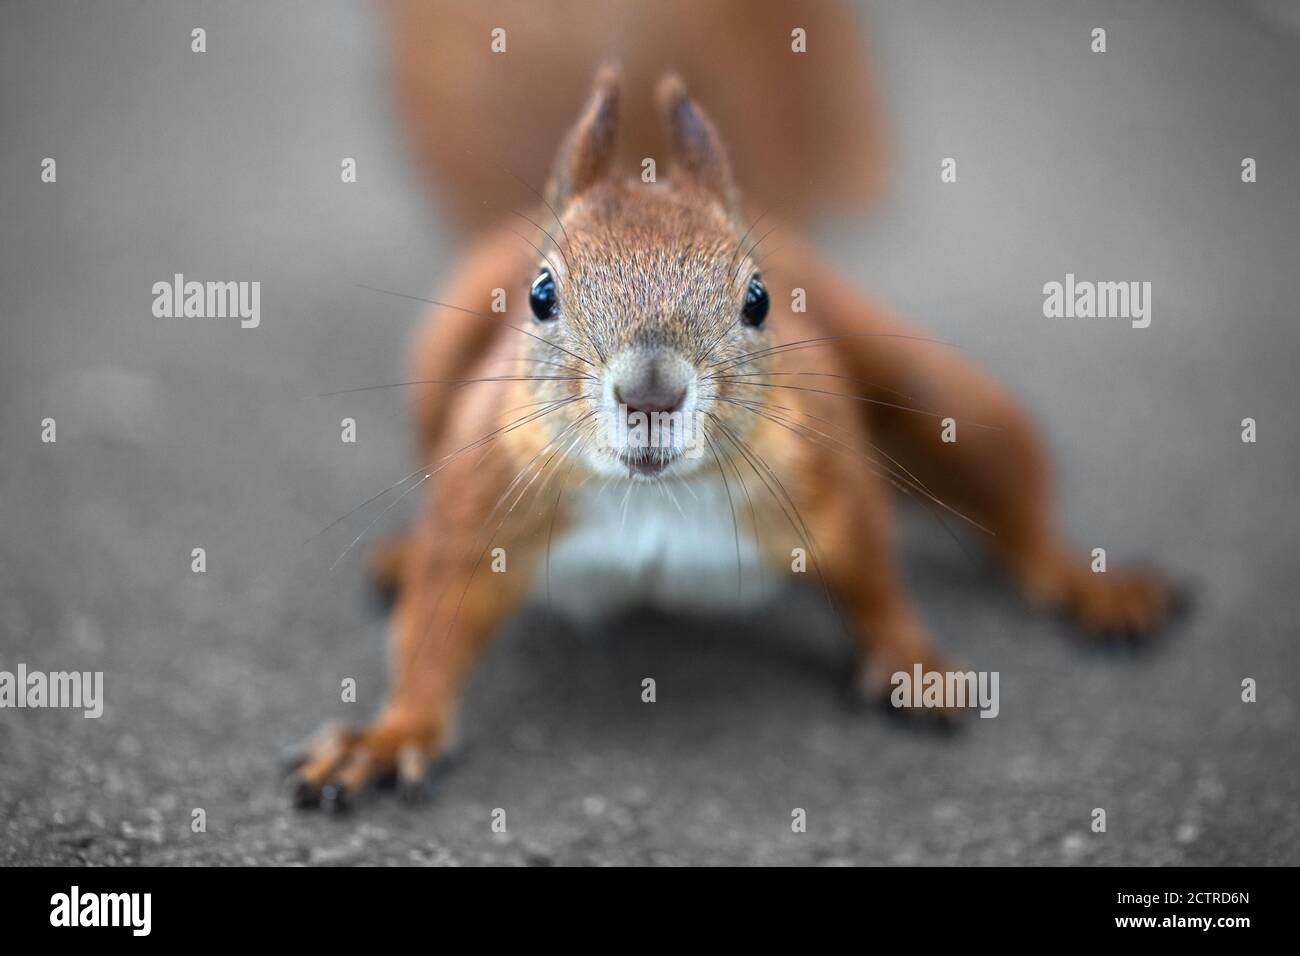 Muzzle of squirrels close up. Defocused image. Stock Photo